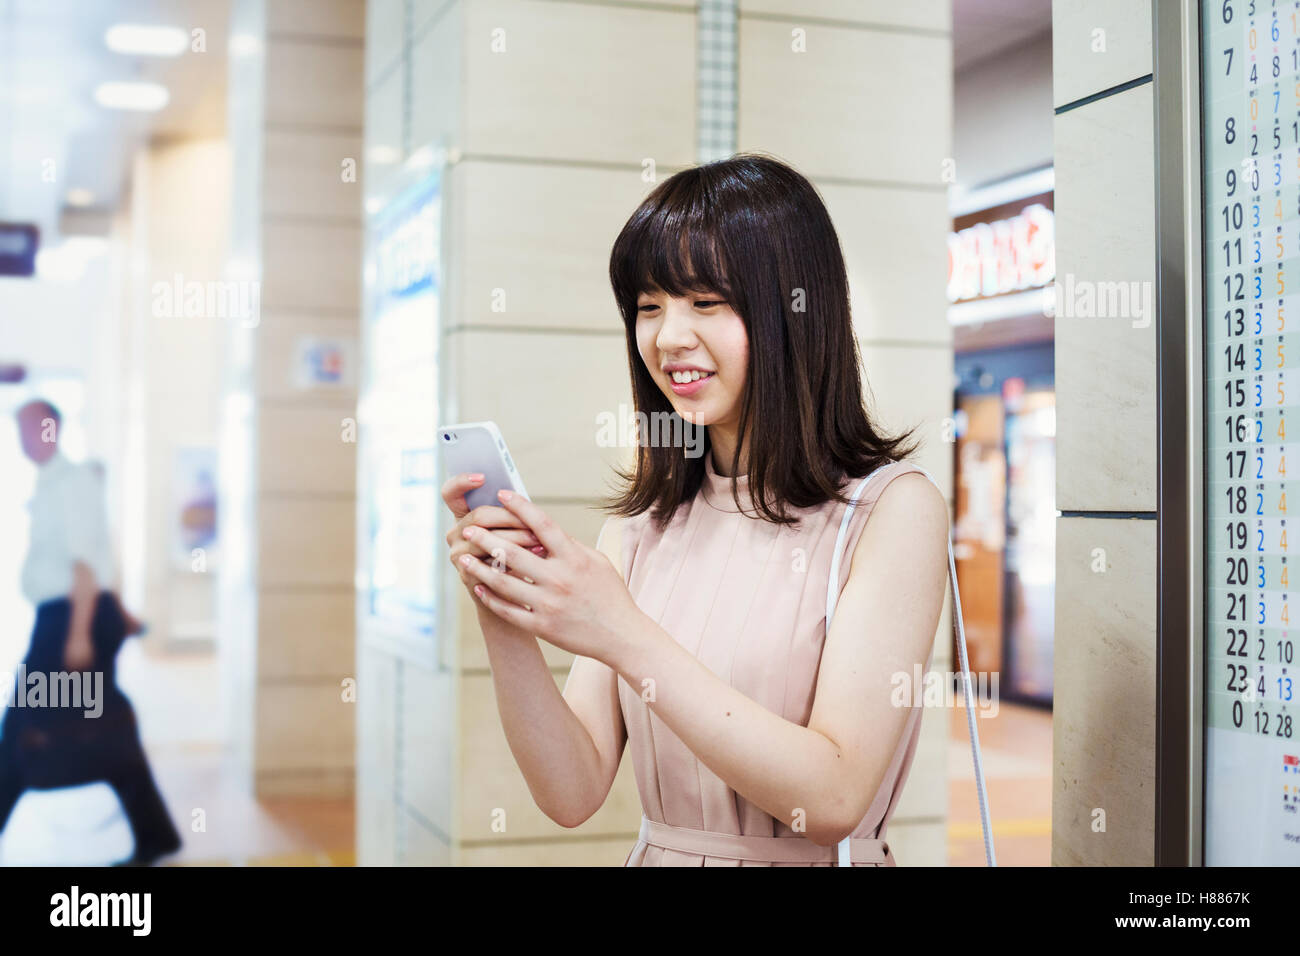 Sorridente giovane donna con capelli lunghi marrone, tenendo in mano un telefono cellulare. Foto Stock